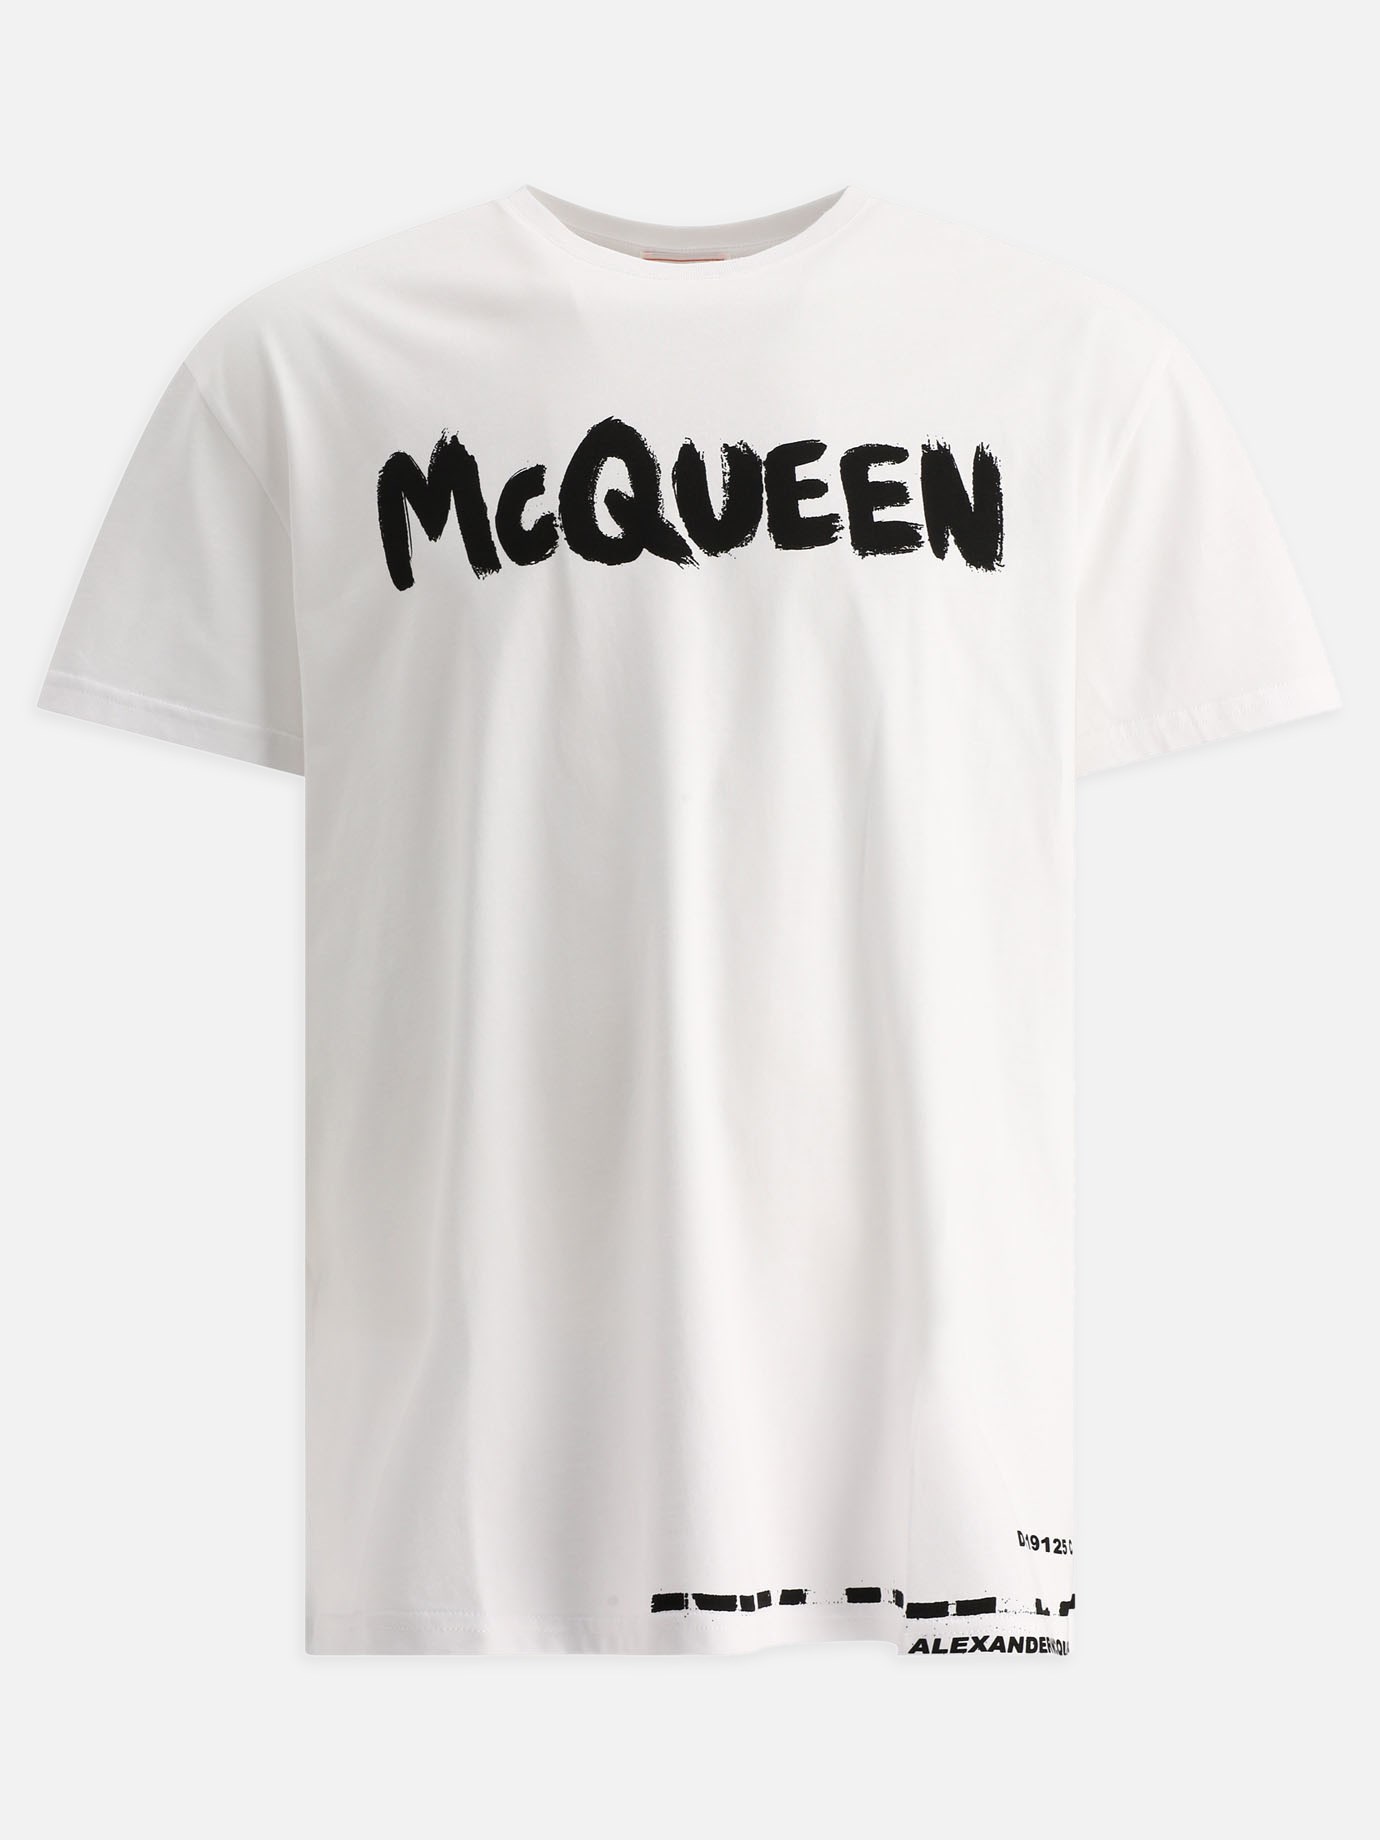  Graffiti  t-shirtby Alexander McQueen - 4